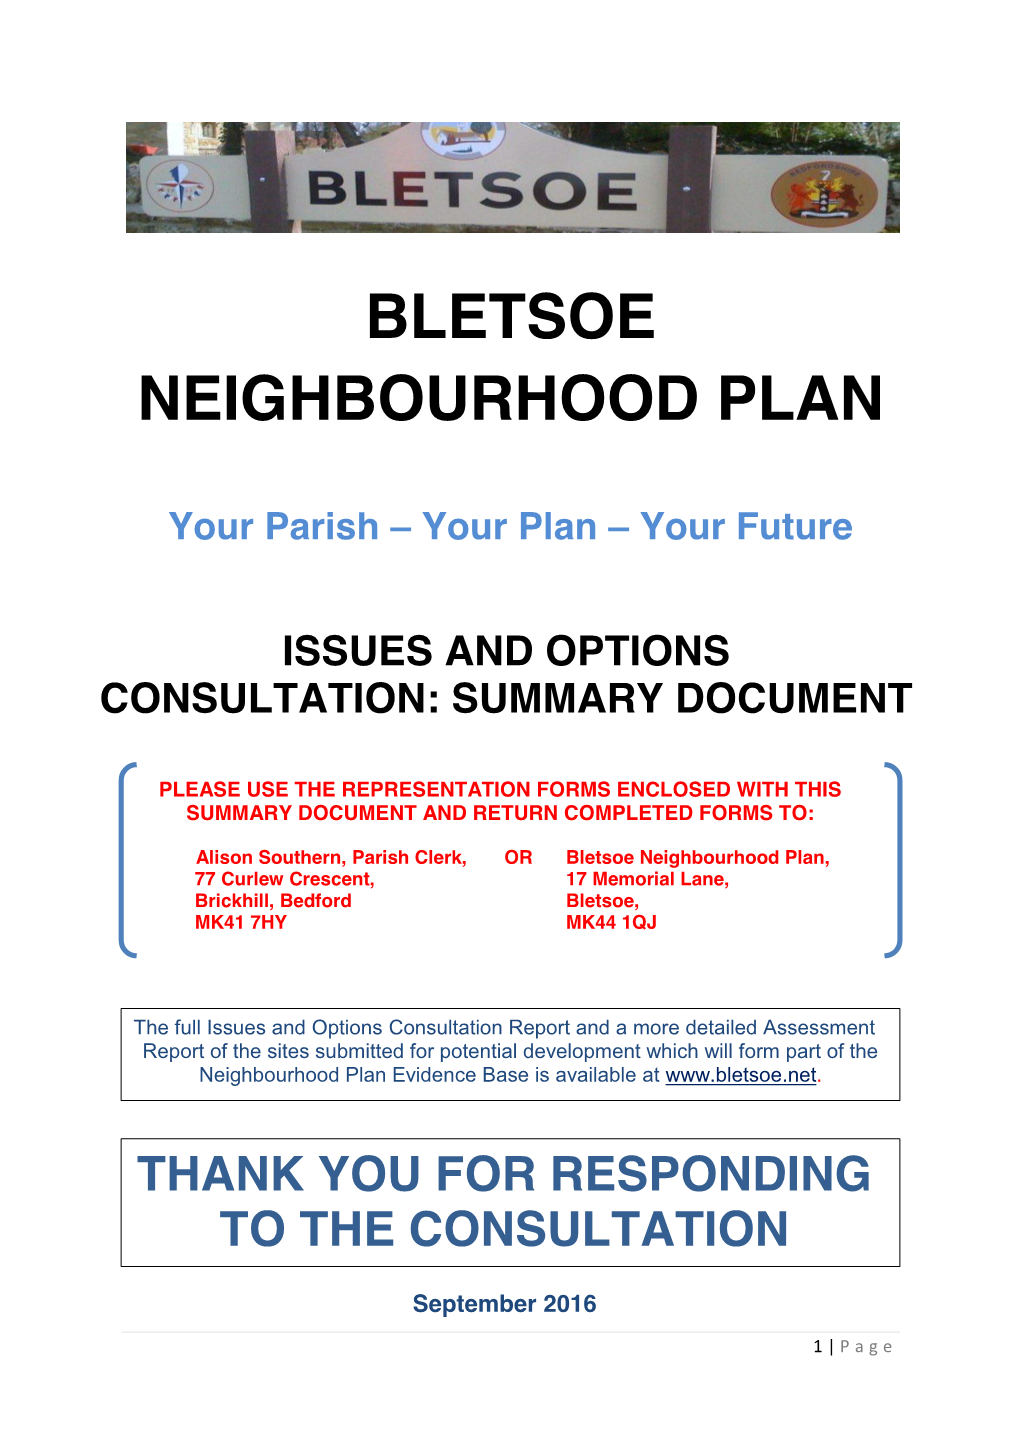 Bletsoe Neighbourhood Plan